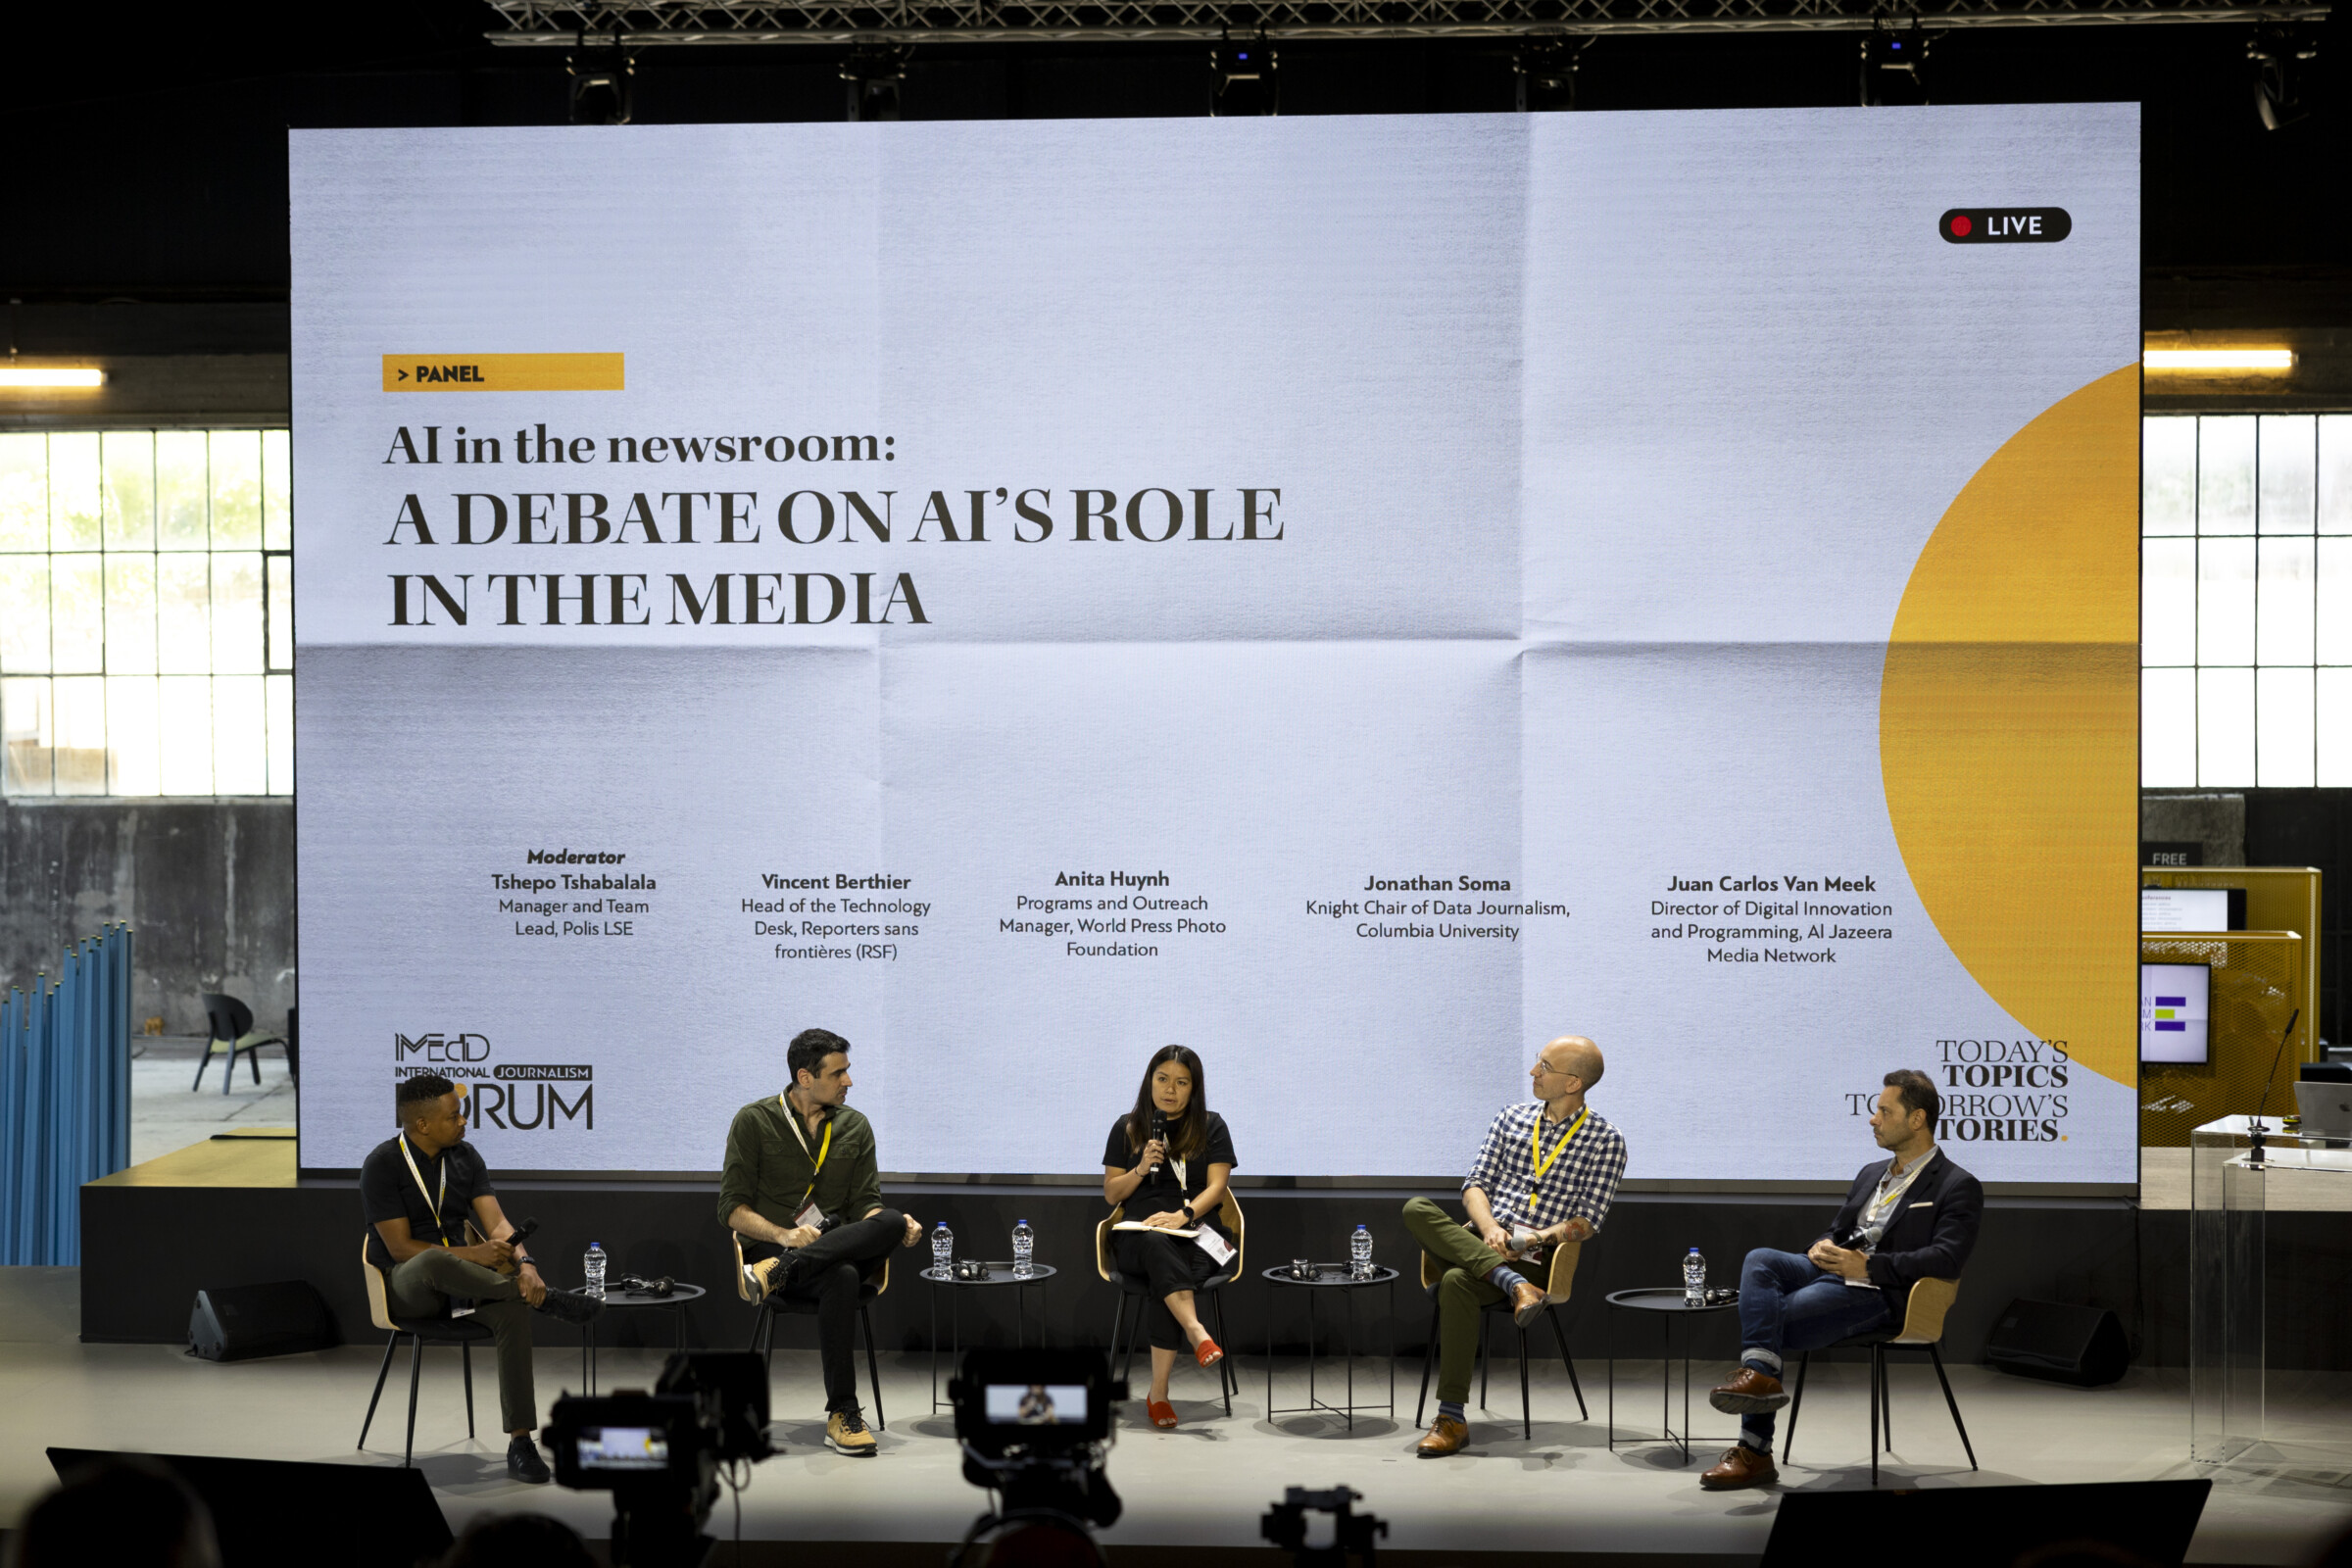 Σε μια σκηνή πέντε άτομα κάθονται μπροστά από ένα μεγάλο λευκό και κίτρινο πανάκι που γράφει "AI in the Newsroom: Μια συζήτηση για το ρόλο της τεχνητής νοημοσύνης στα μέσα ενημέρωσης". Η γυναίκα στο κέντρο, ντυμένη στα μαύρα, κρατάει το μικρόφωνο. Οι υπόλοιποι τέσσερις άνδρες του πάνελ την ακούνε όλοι μαζί.